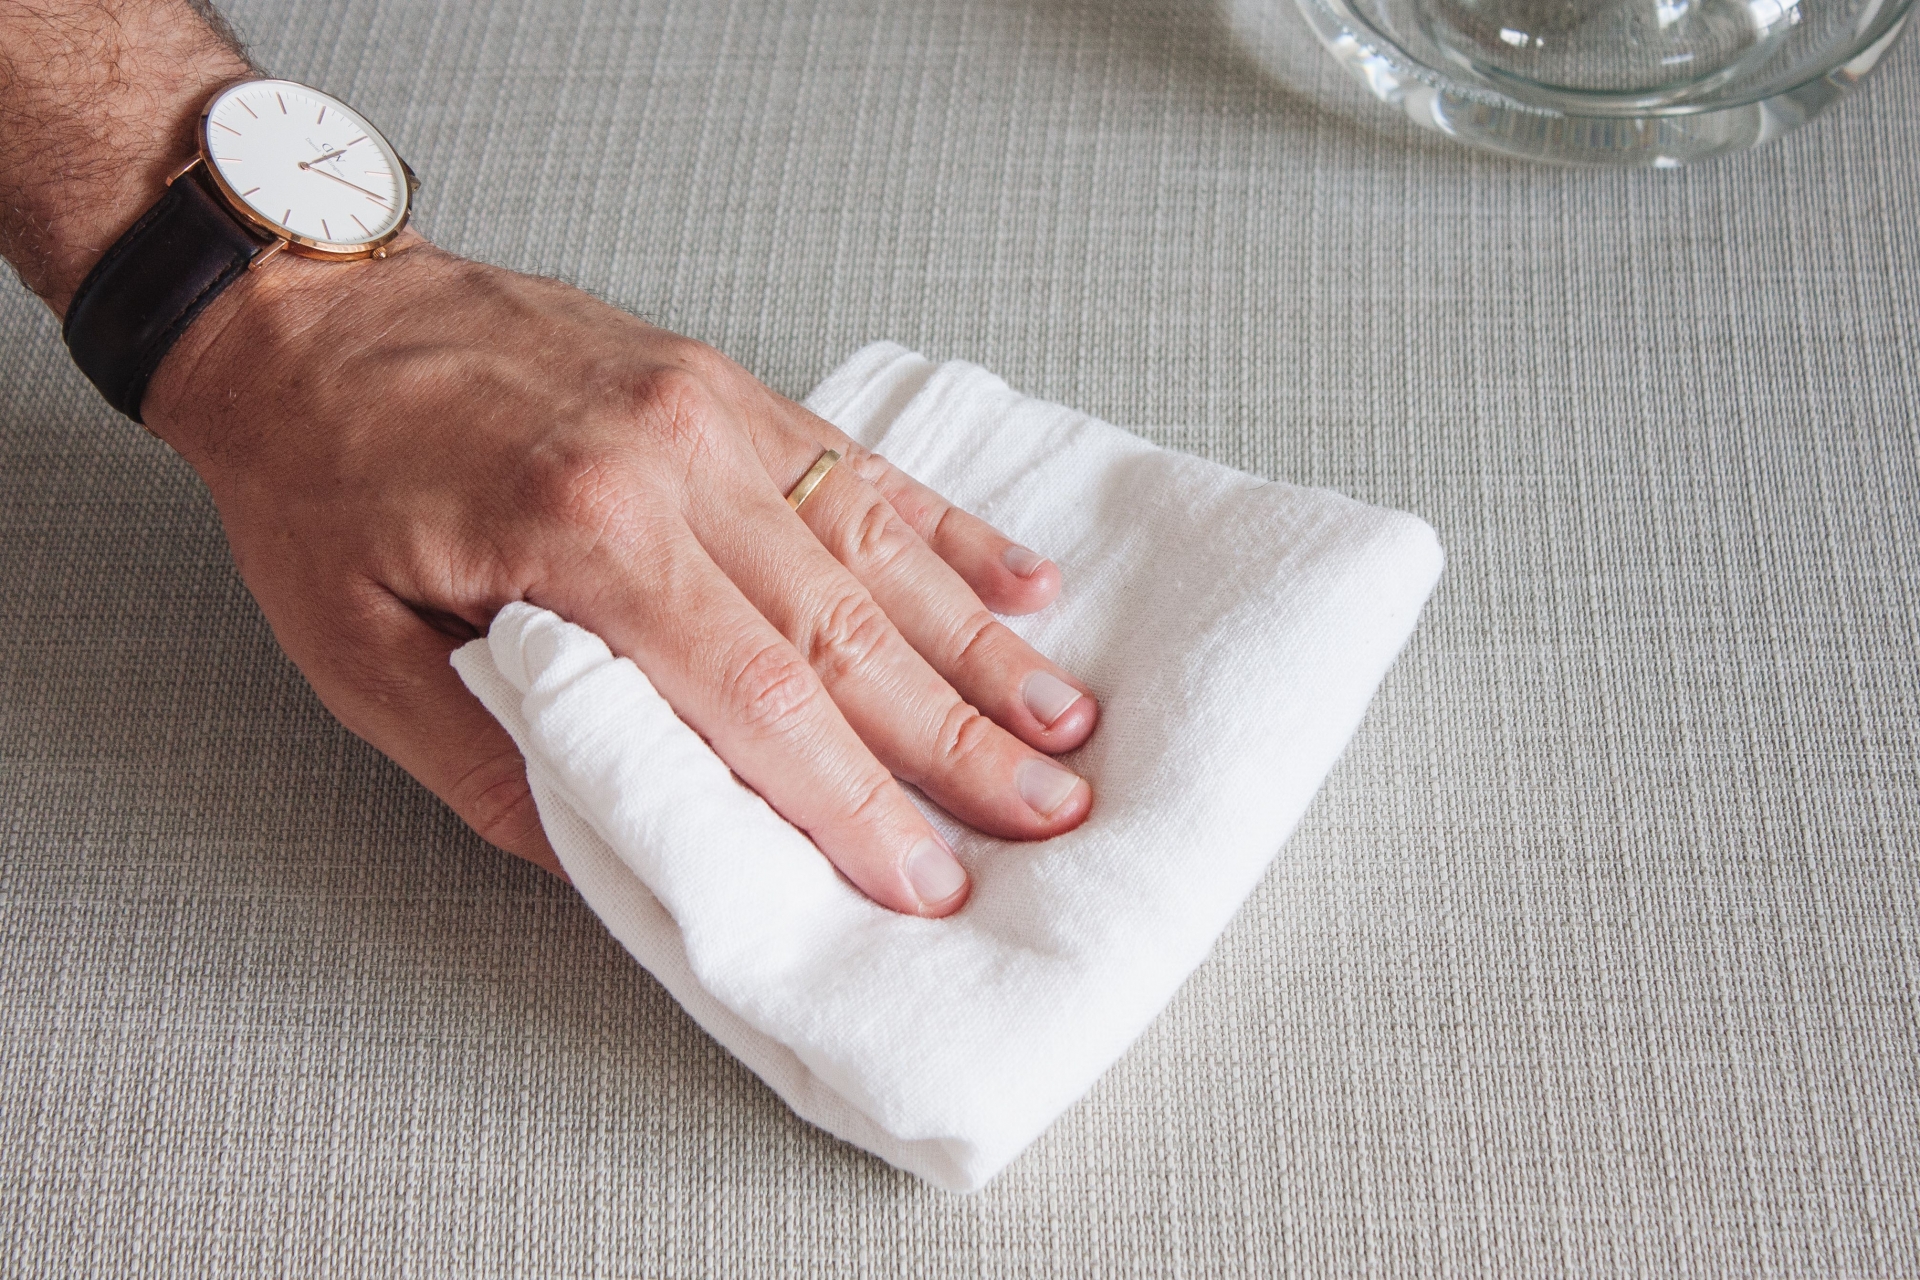 Thấm kỹ bằng khăn/vải khô để hút sạch độ ẩm, để khô tự nhiên hoặc dùng quạt, máy sấy hỗ trợ.